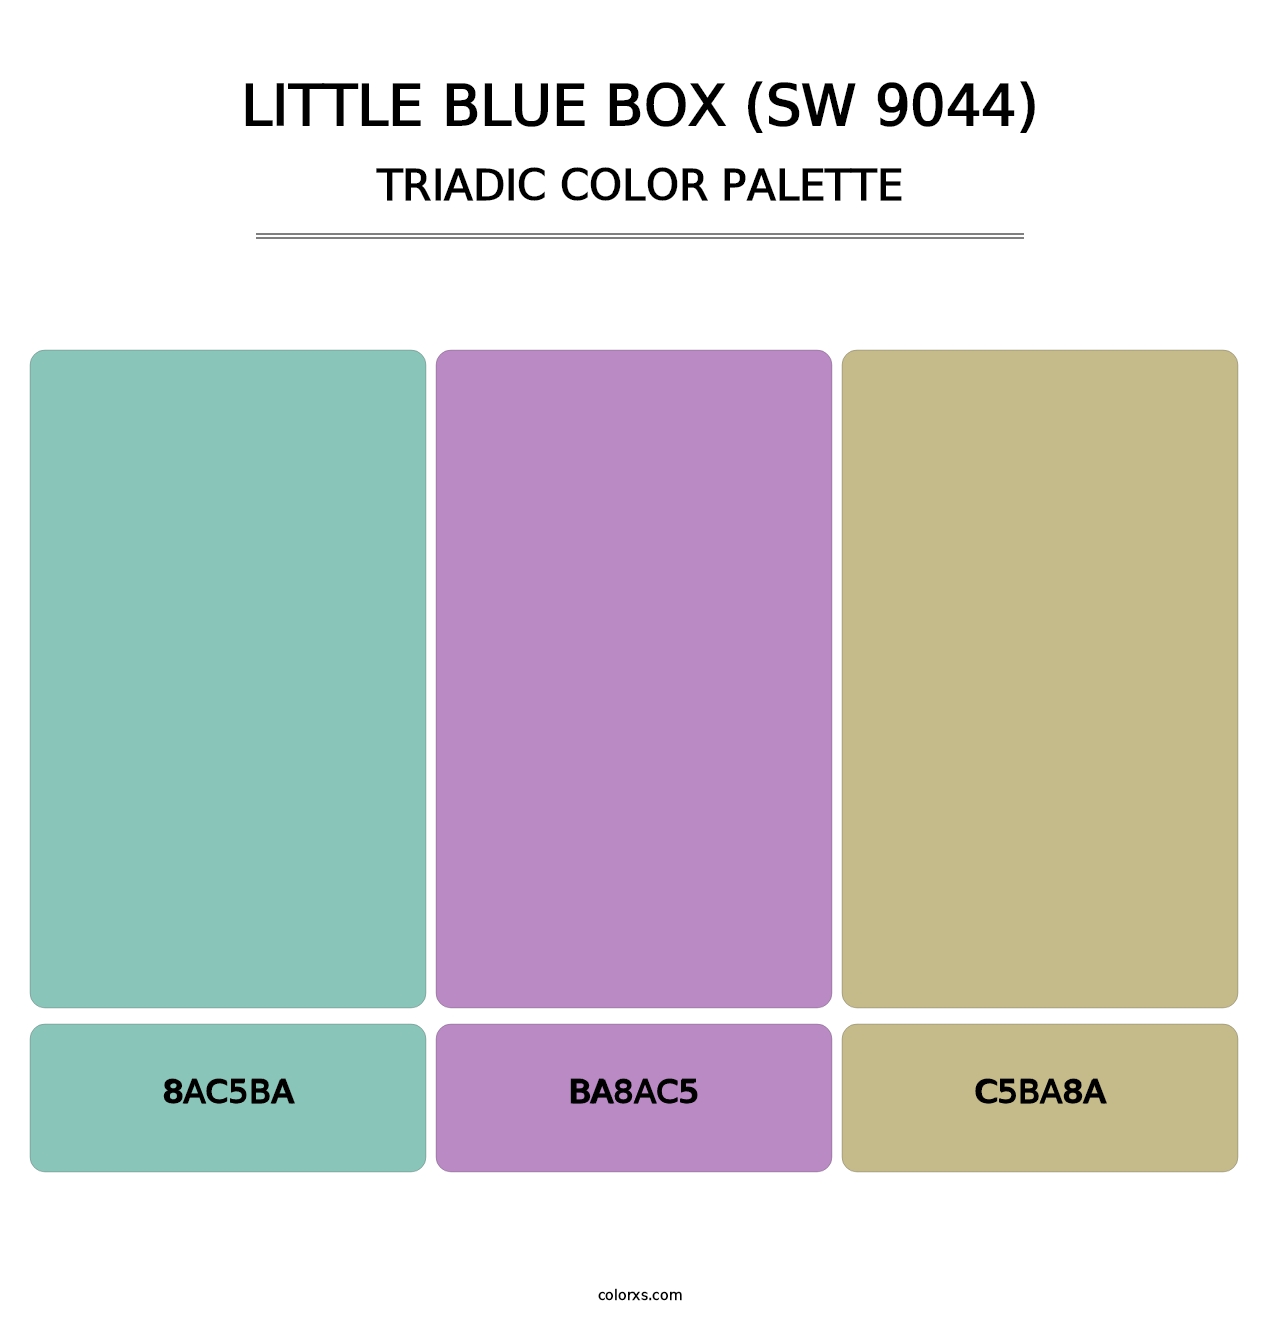 Little Blue Box (SW 9044) - Triadic Color Palette